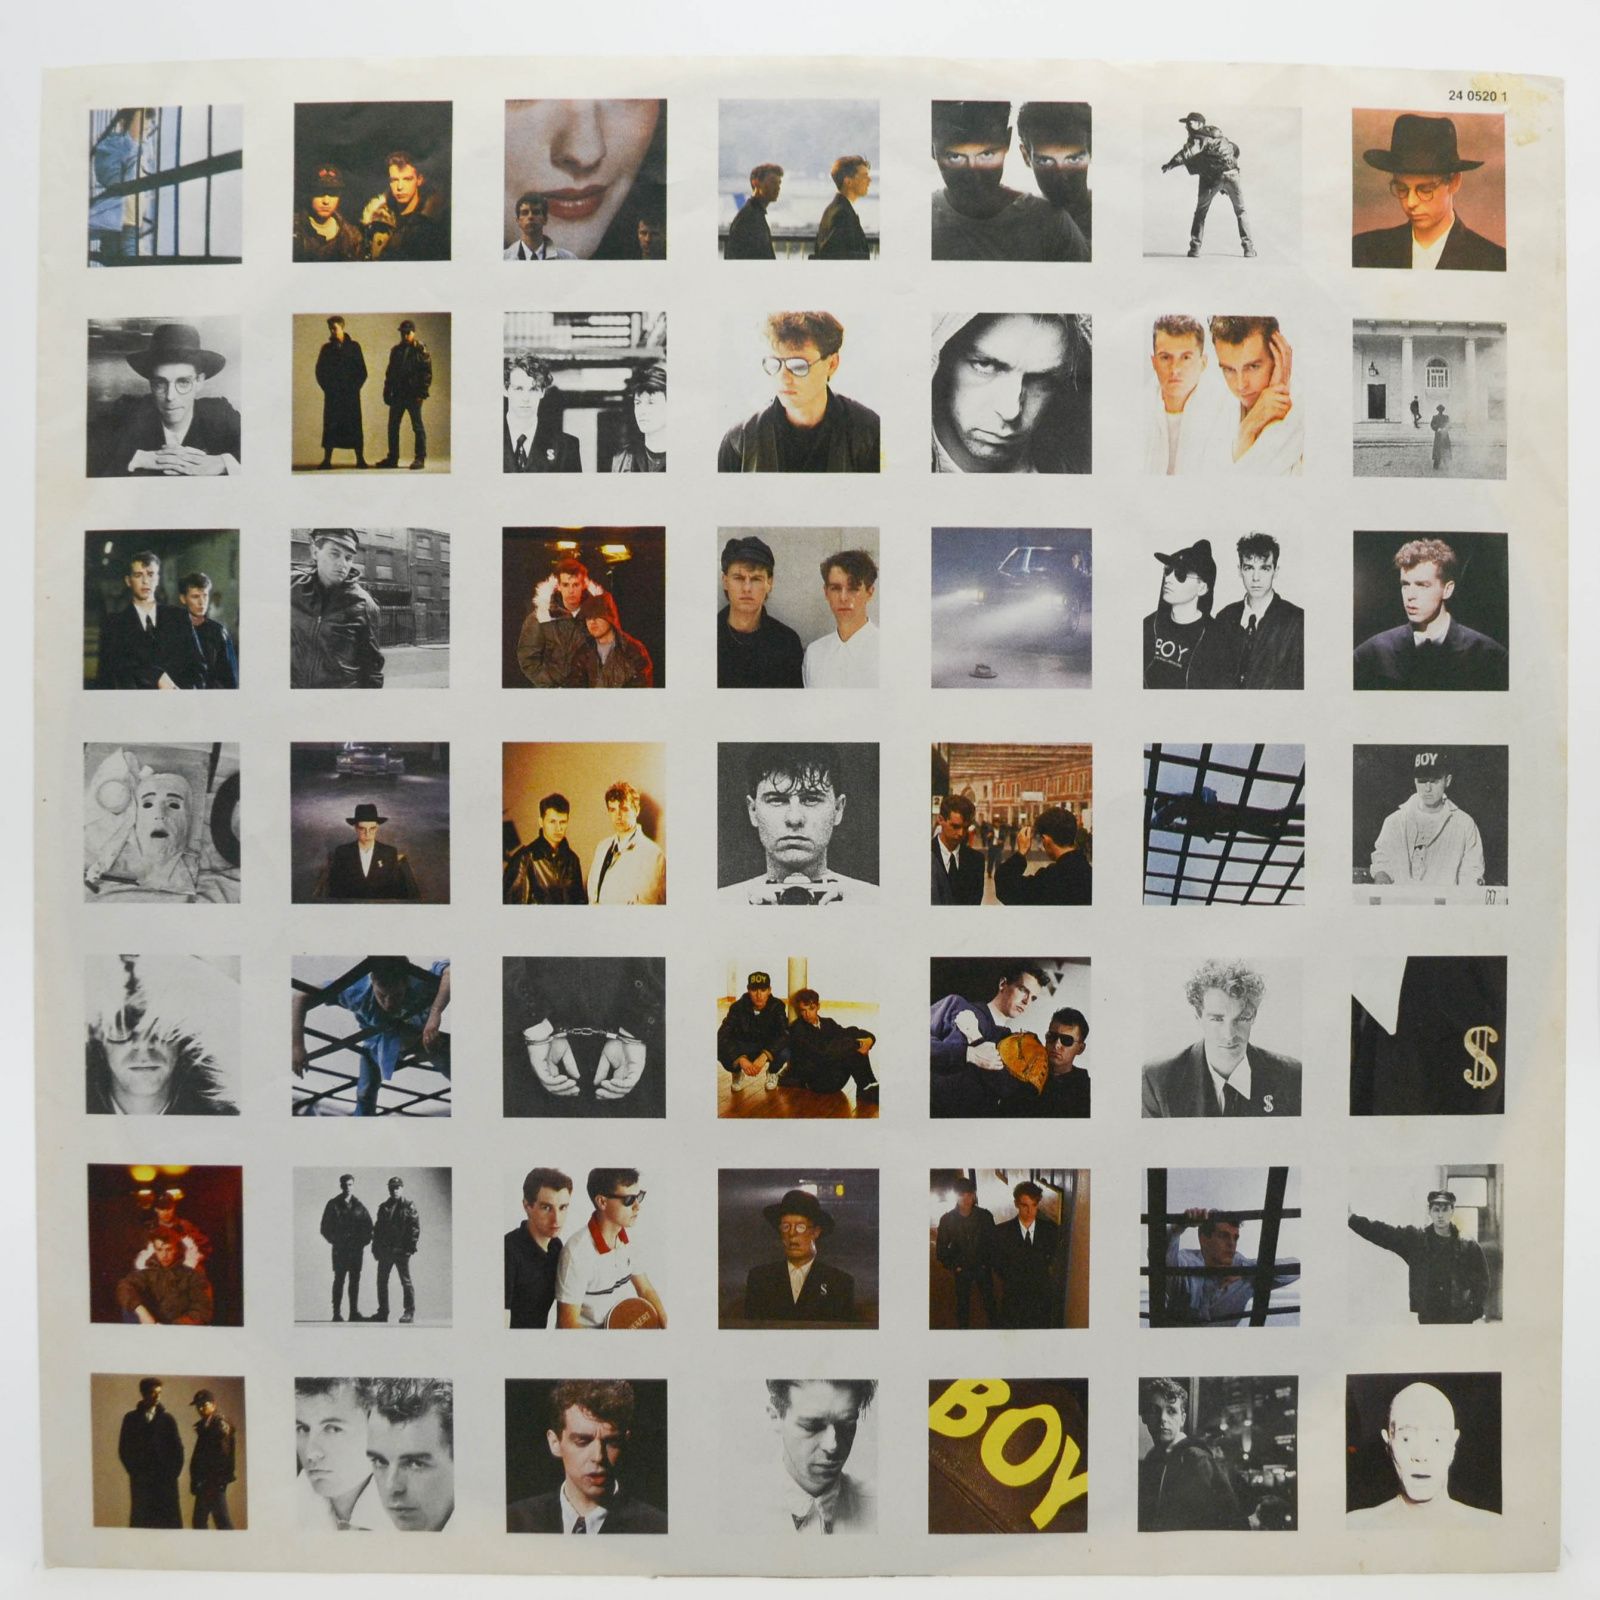 Pet Shop Boys — Please, 1986